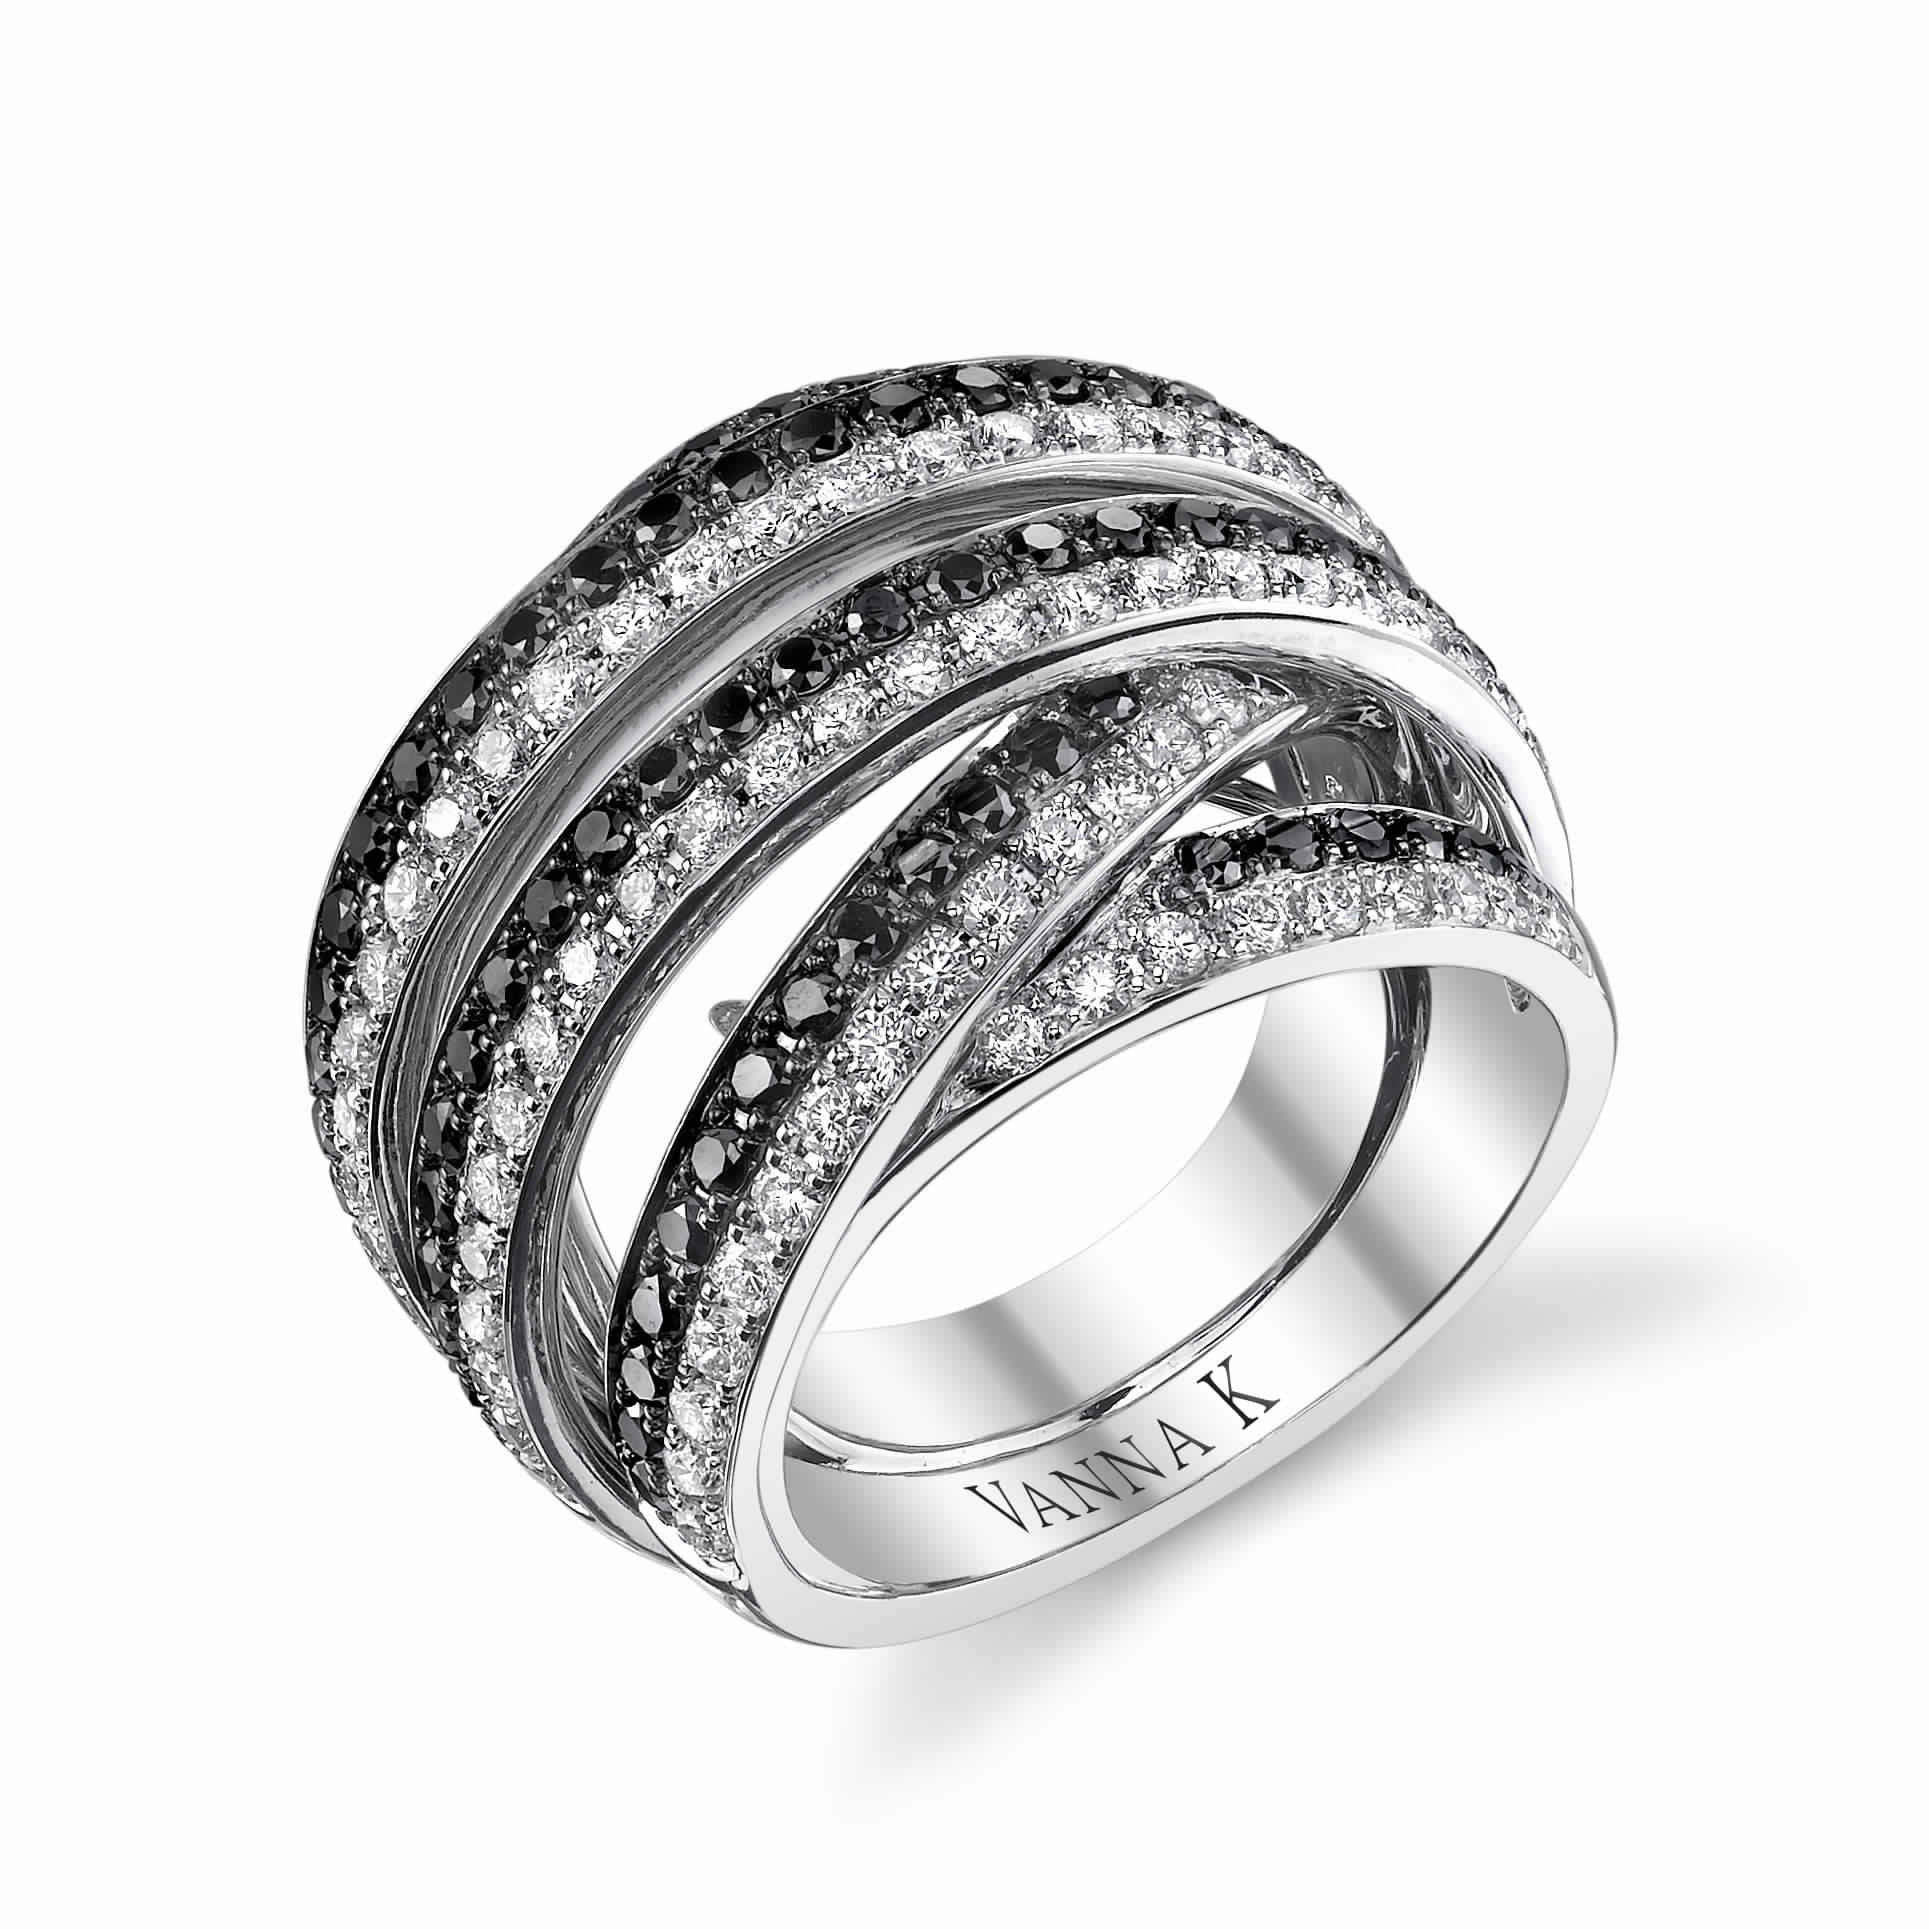 Korvara Diamond Fashion Ring Design Style 18R877